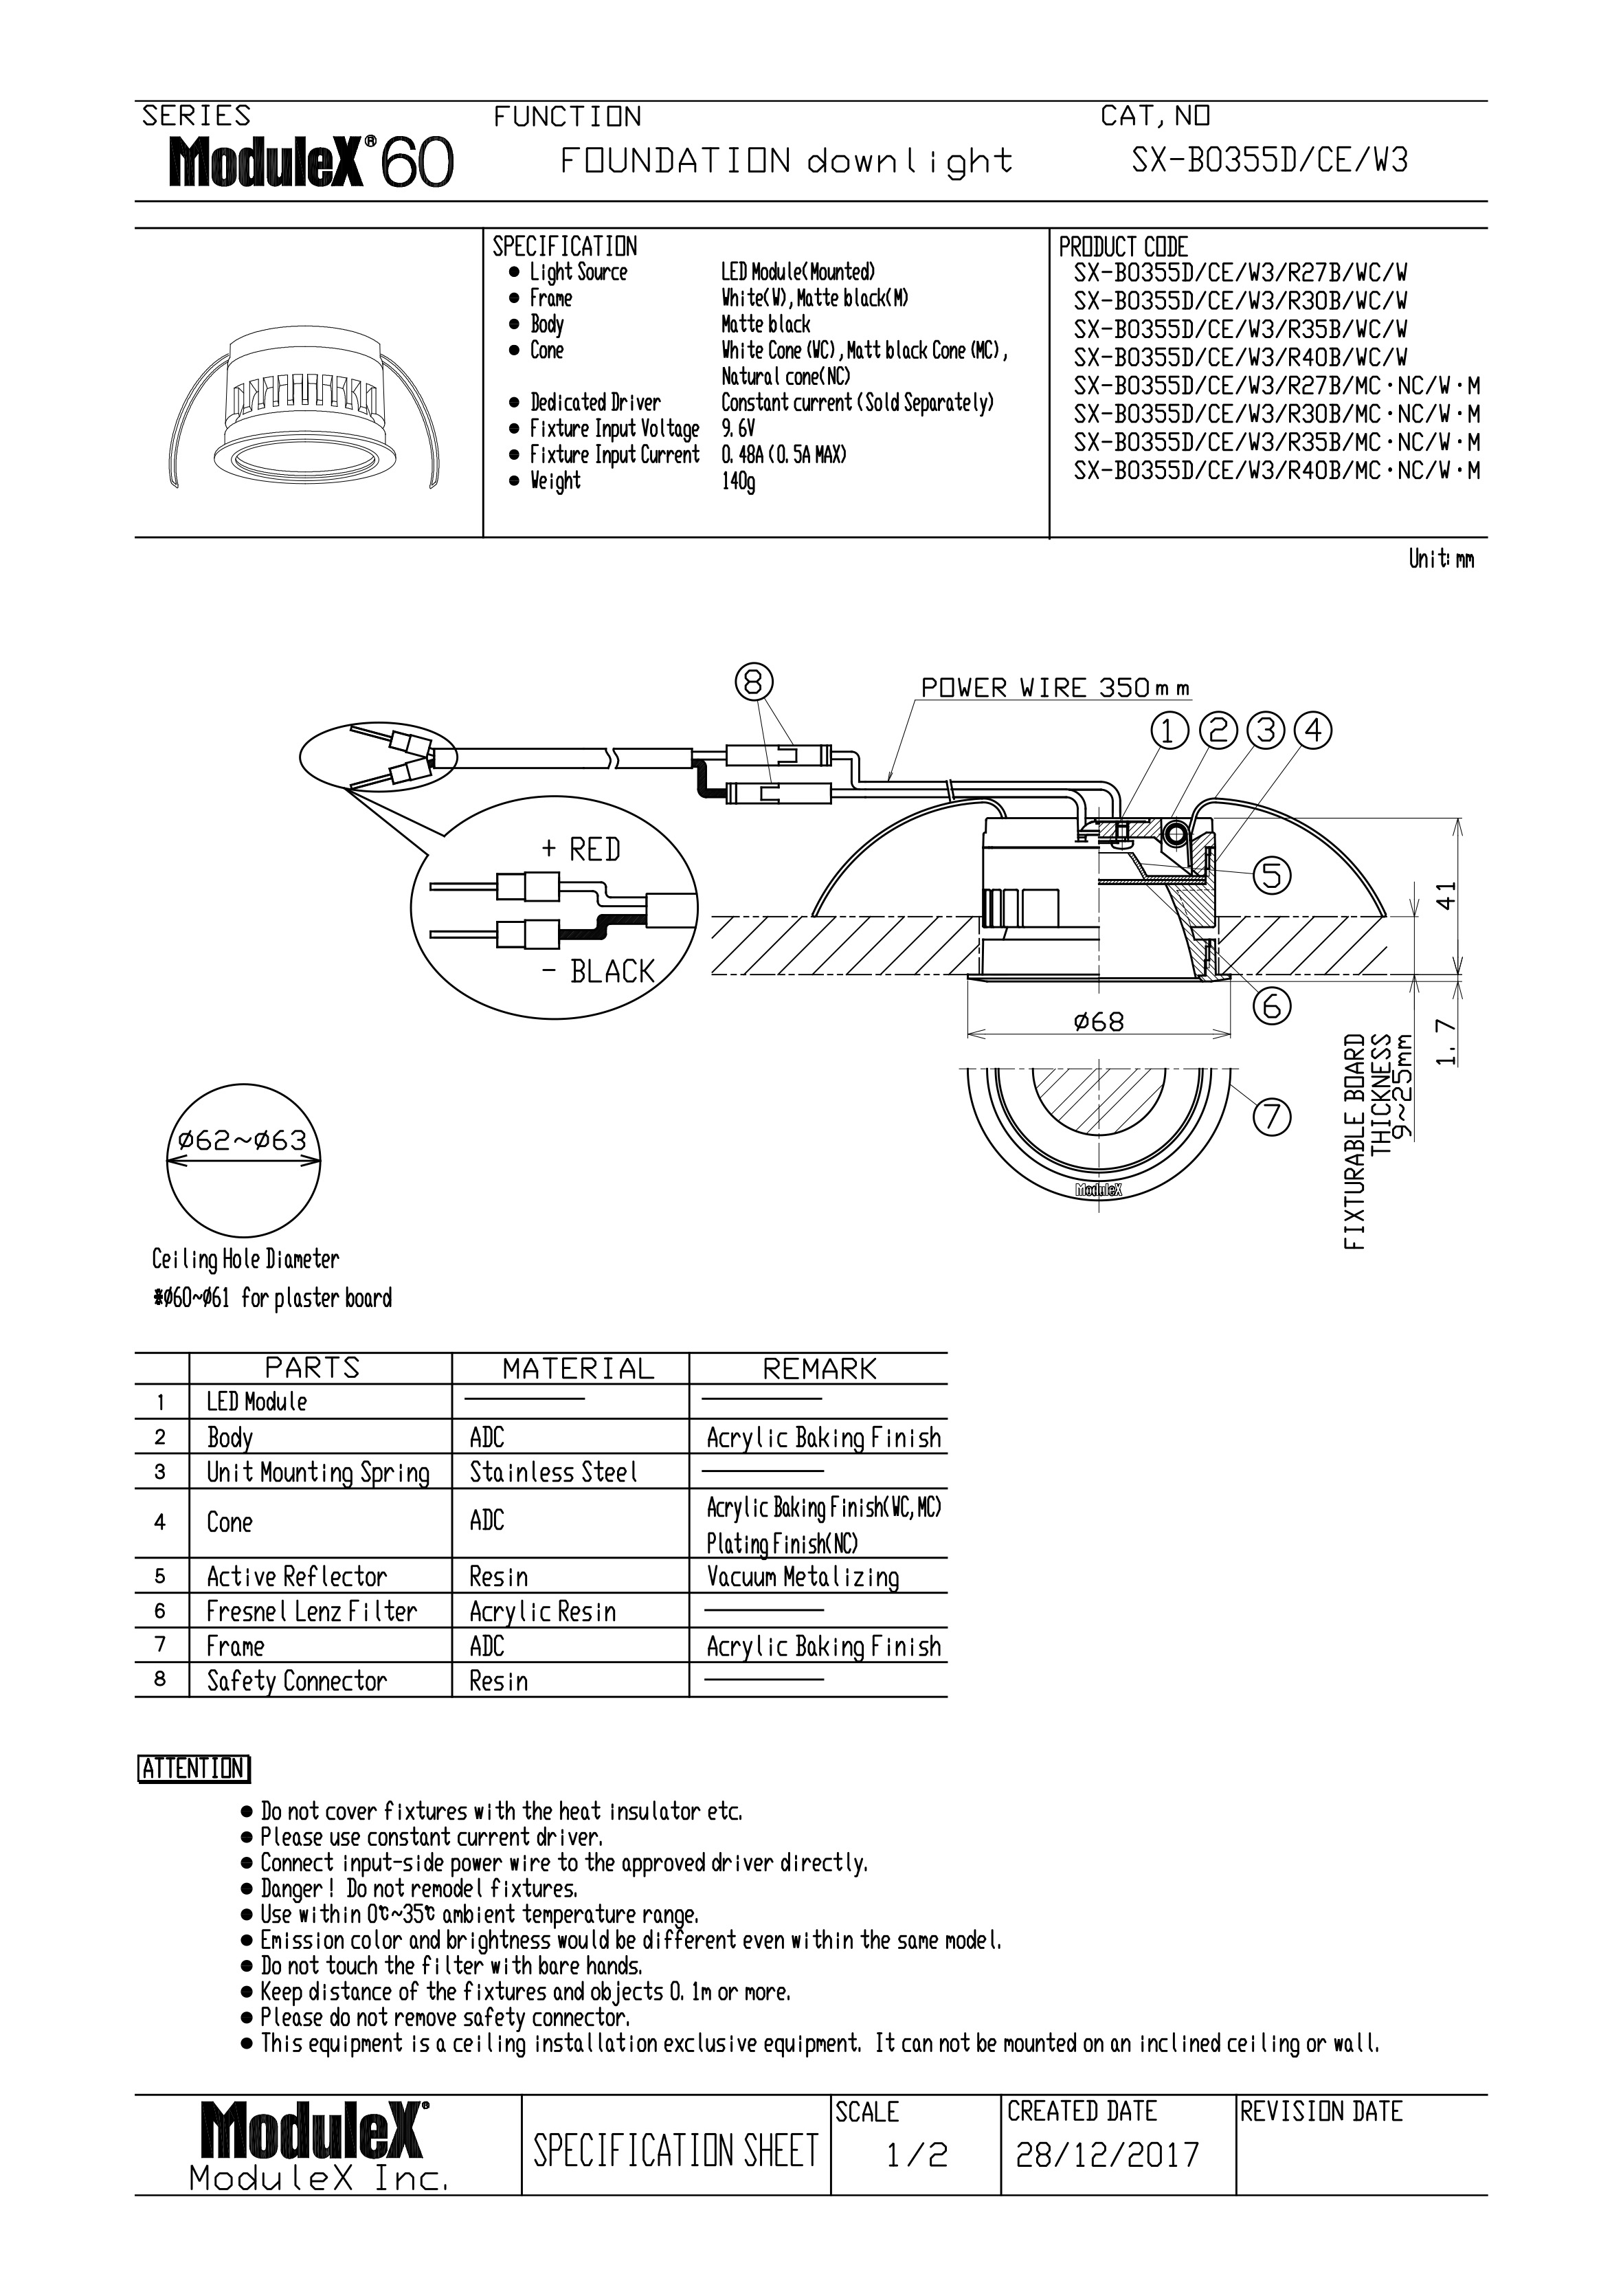 SX-B0355D/W3 Specification Sheet